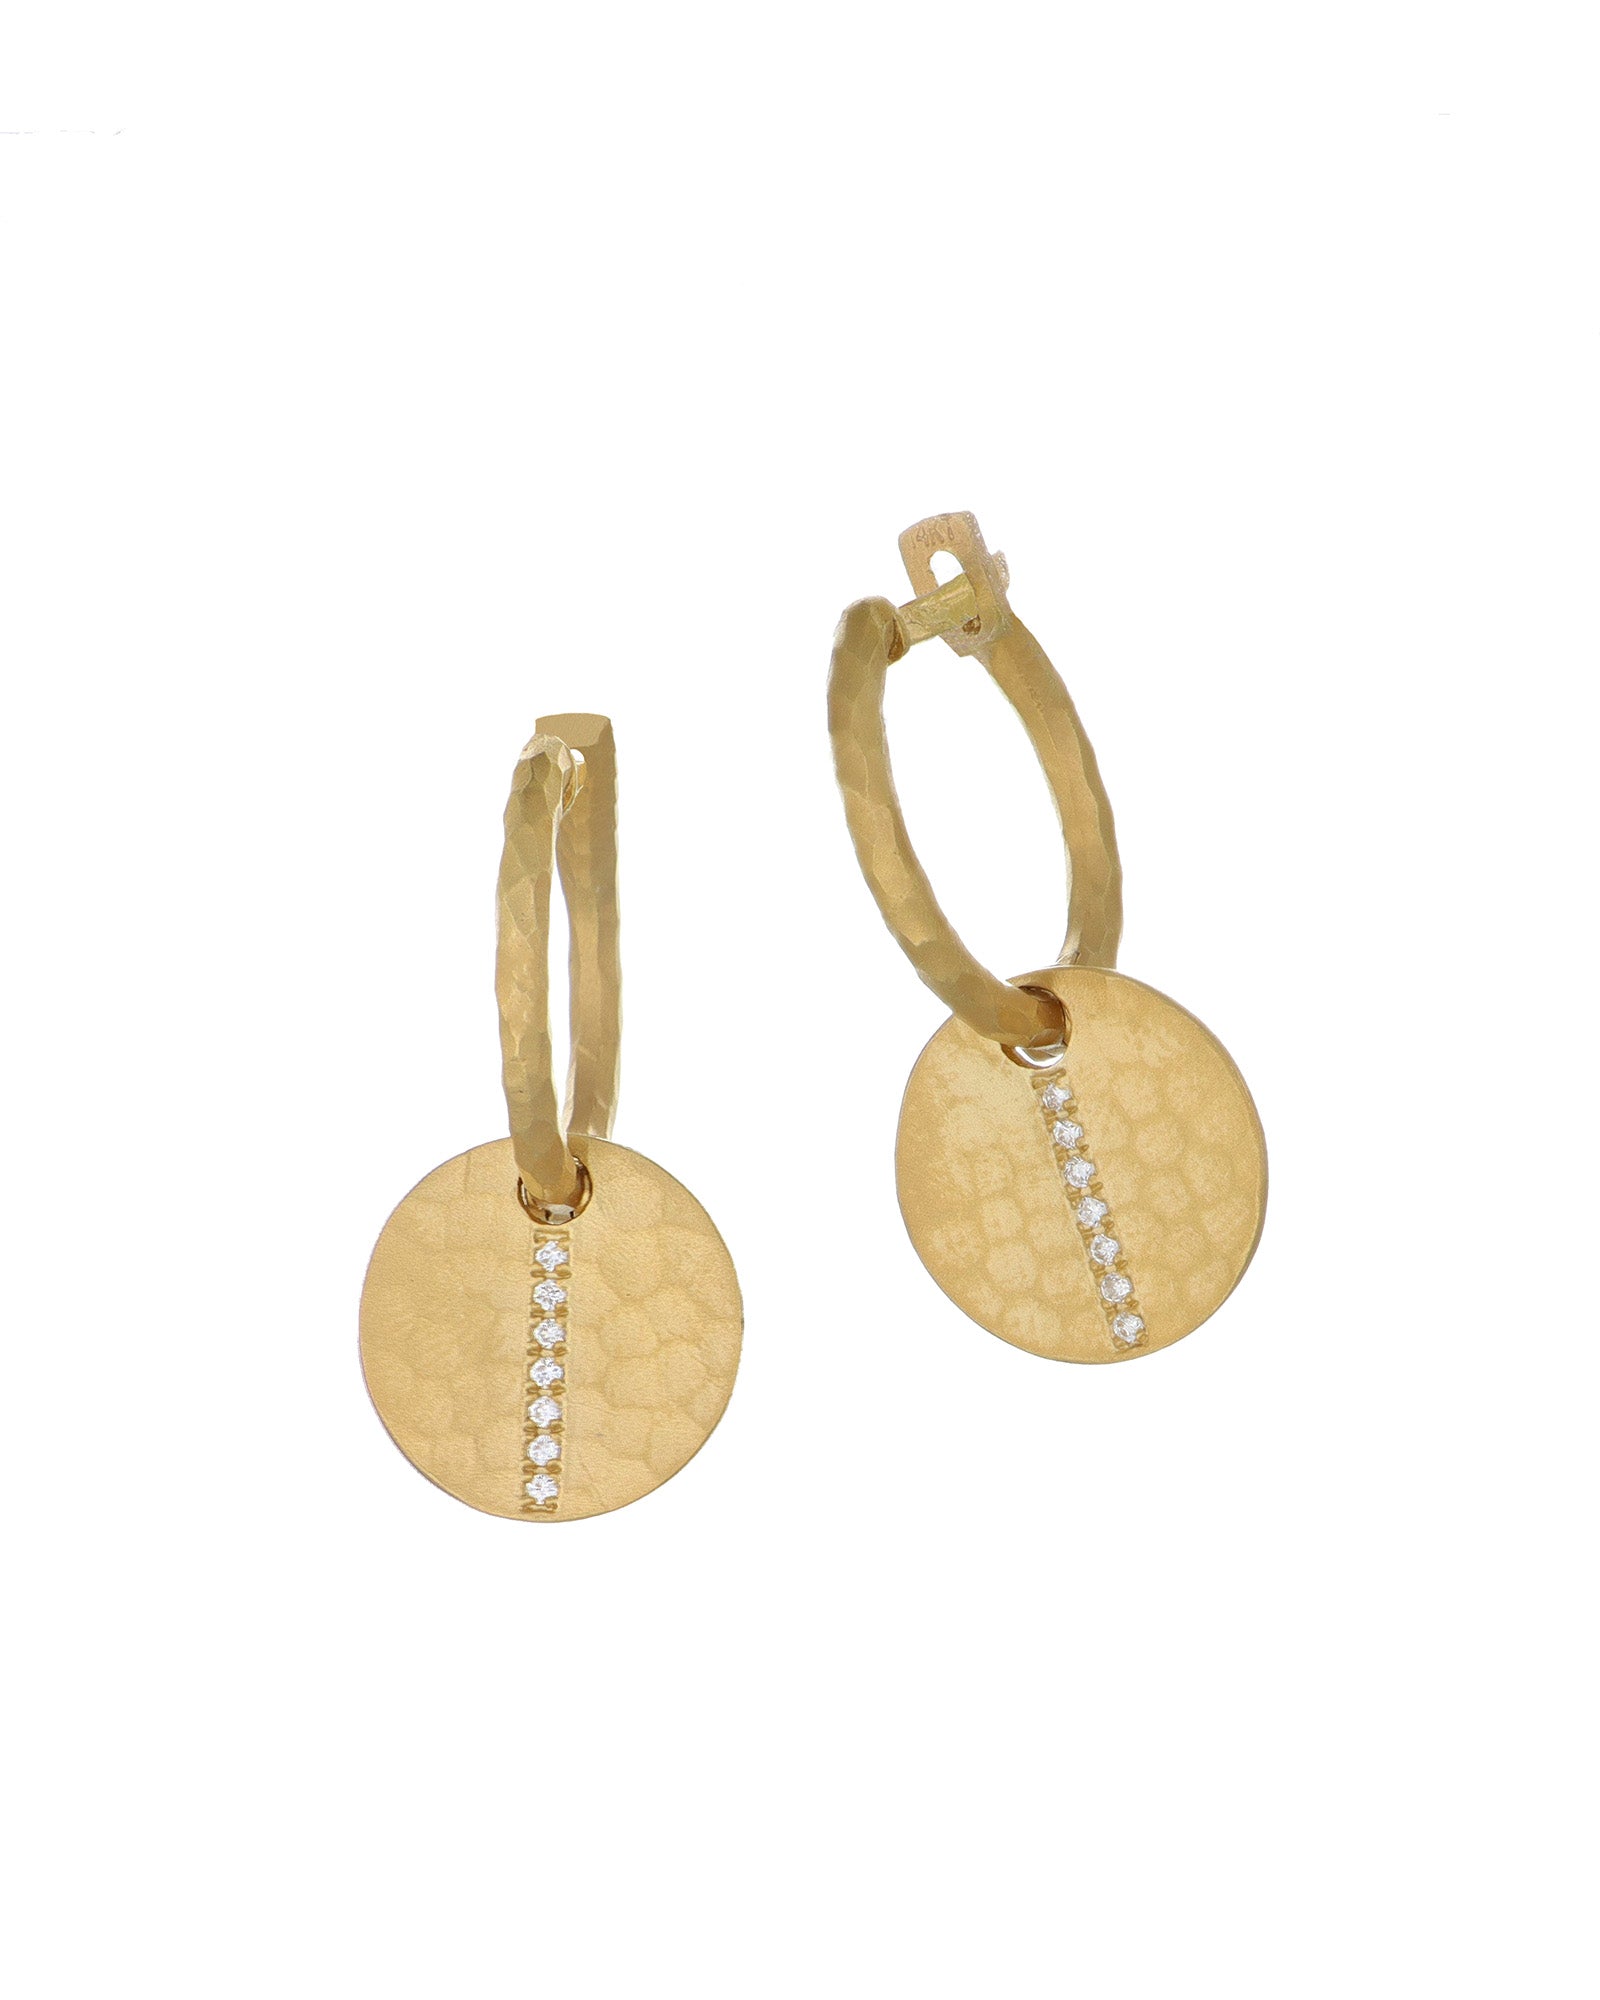 Circles and hoop earrings